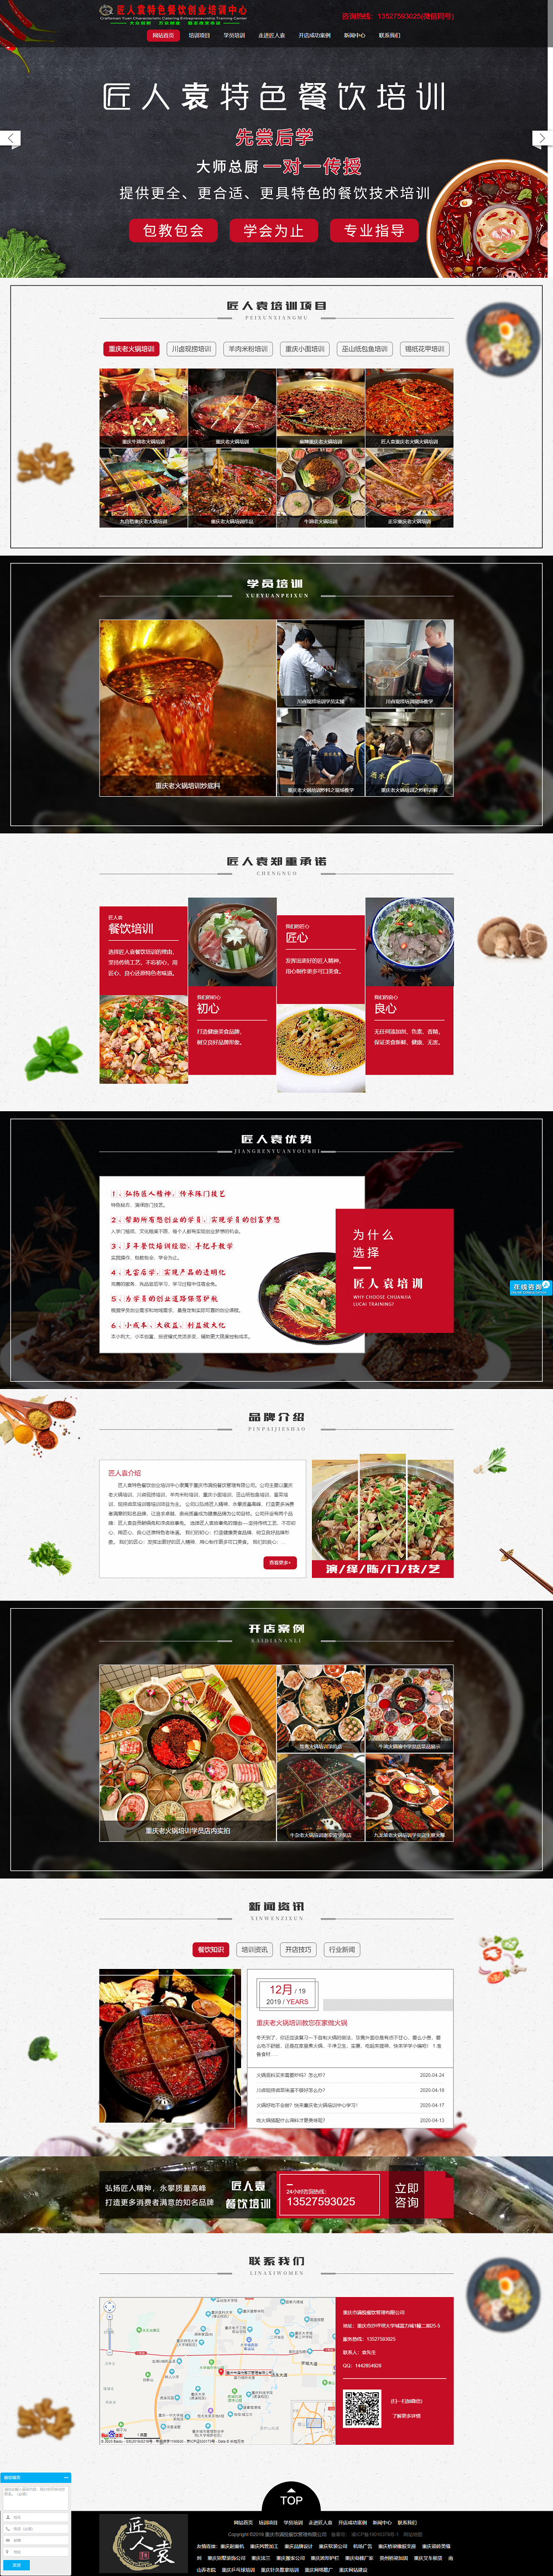 匠人袁特色餐饮创业培训中心网站建设案例